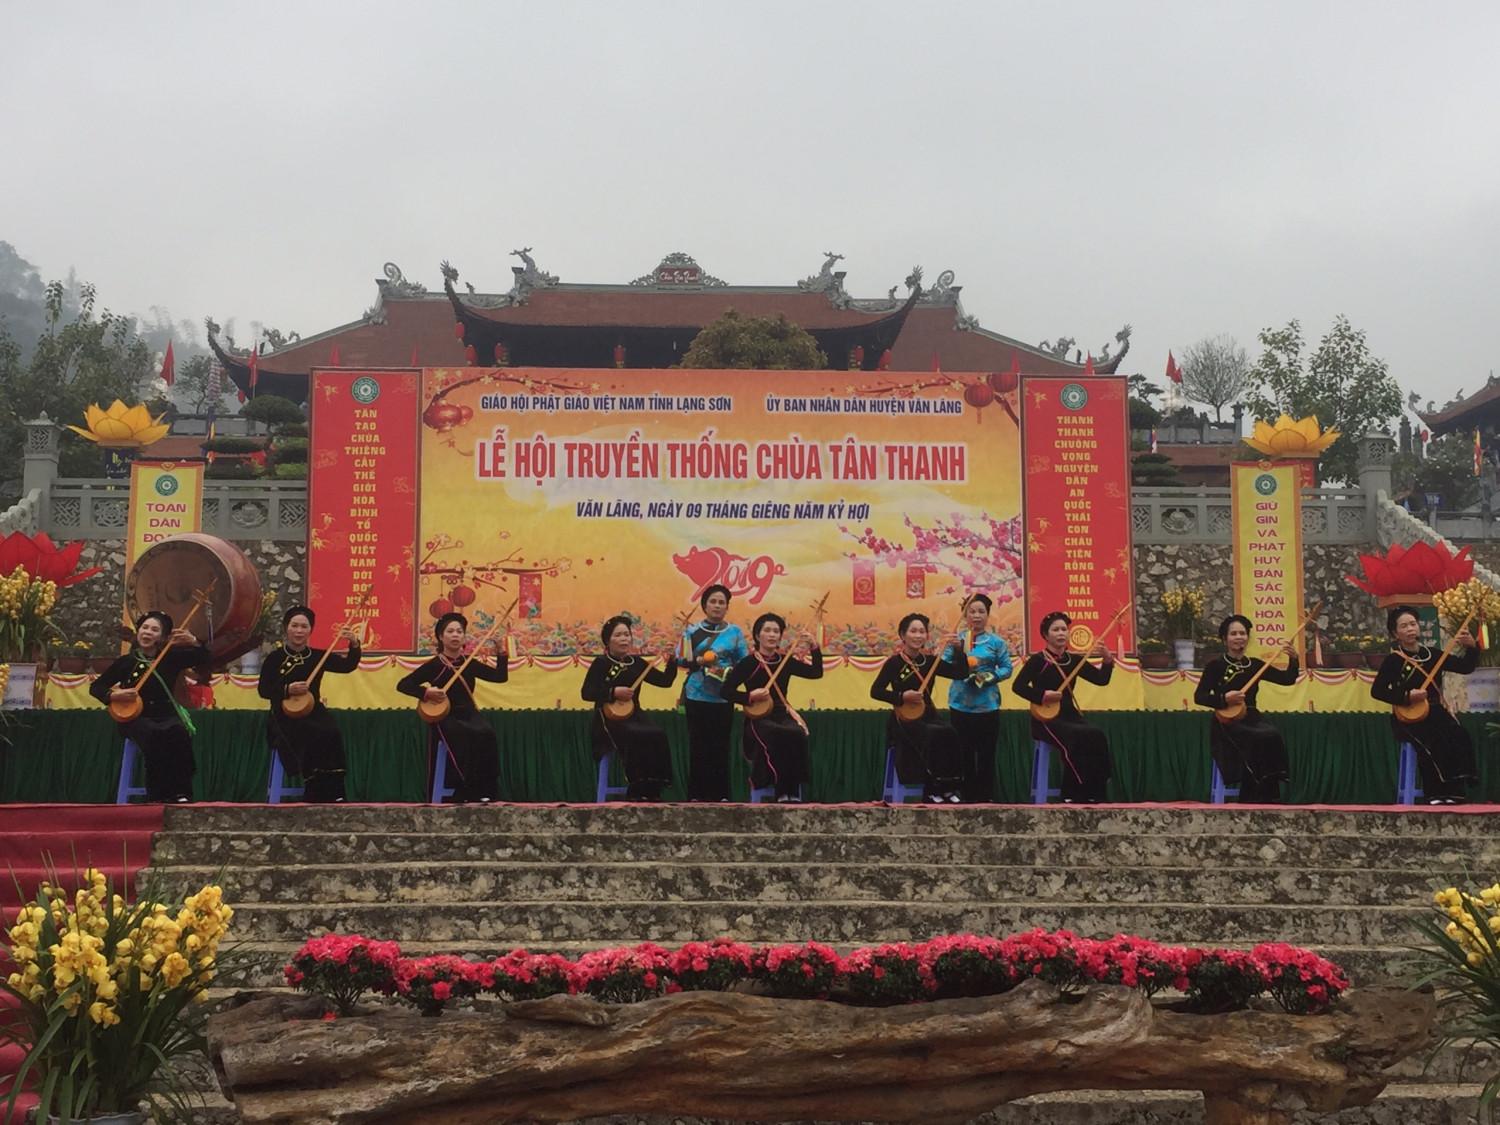 Lạng Sơn: Khai mạc Lễ hội truyền thống Chùa Tân Thanh